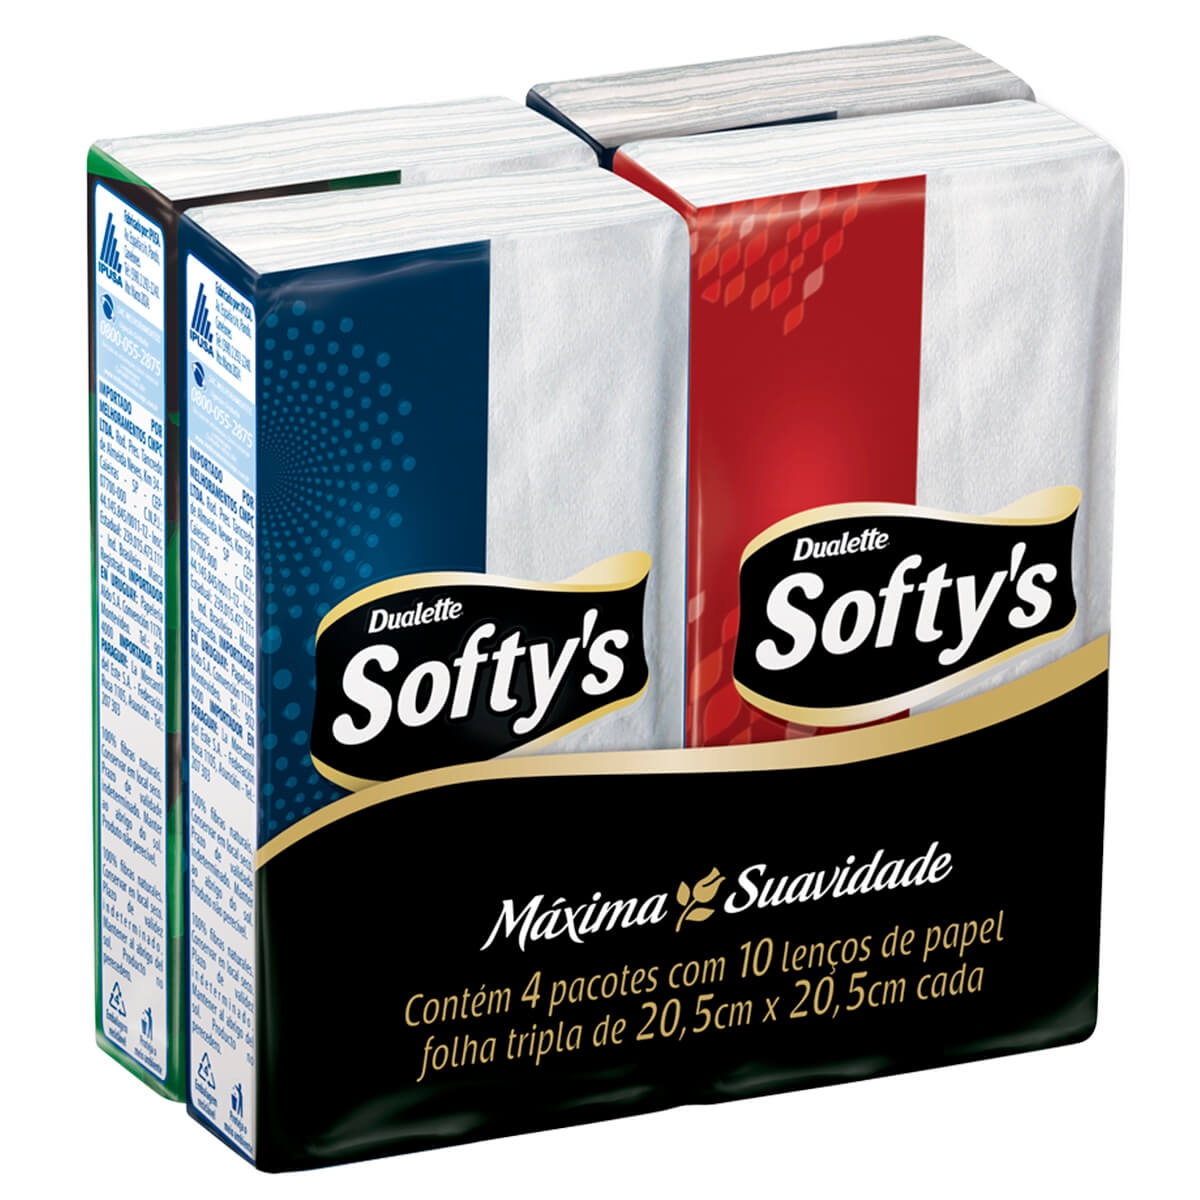 Kit Lenços de Papel Softy's Folha Tripla com 4 pacotes de 10 unidades cada